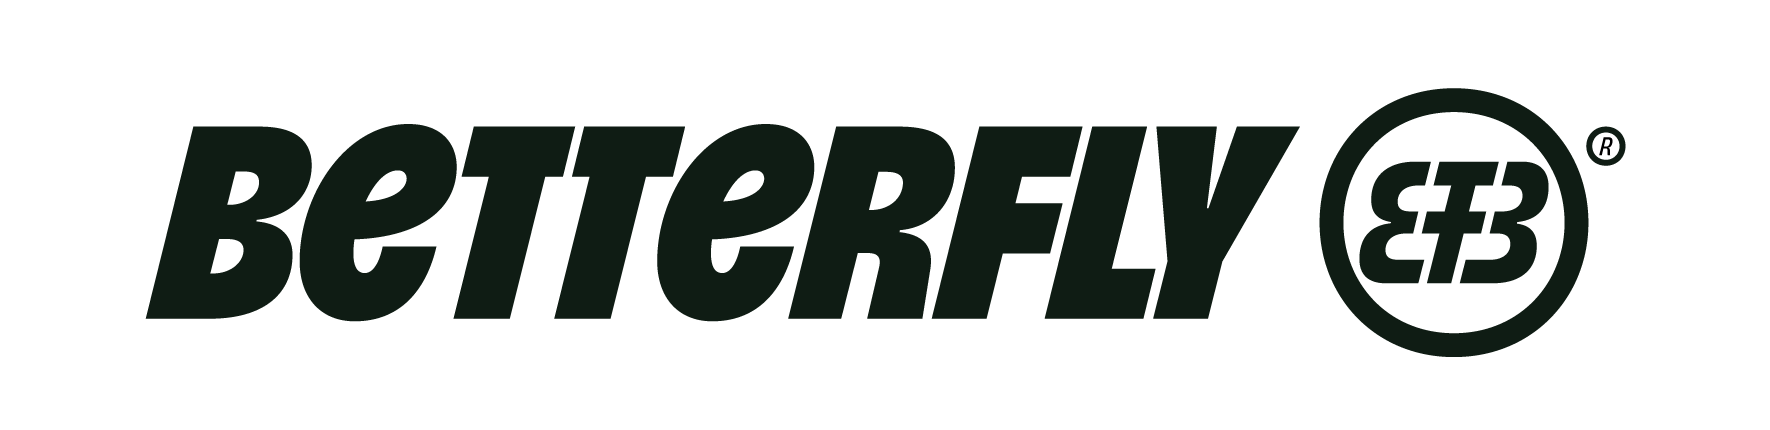 Logo-Betterfly-(1)